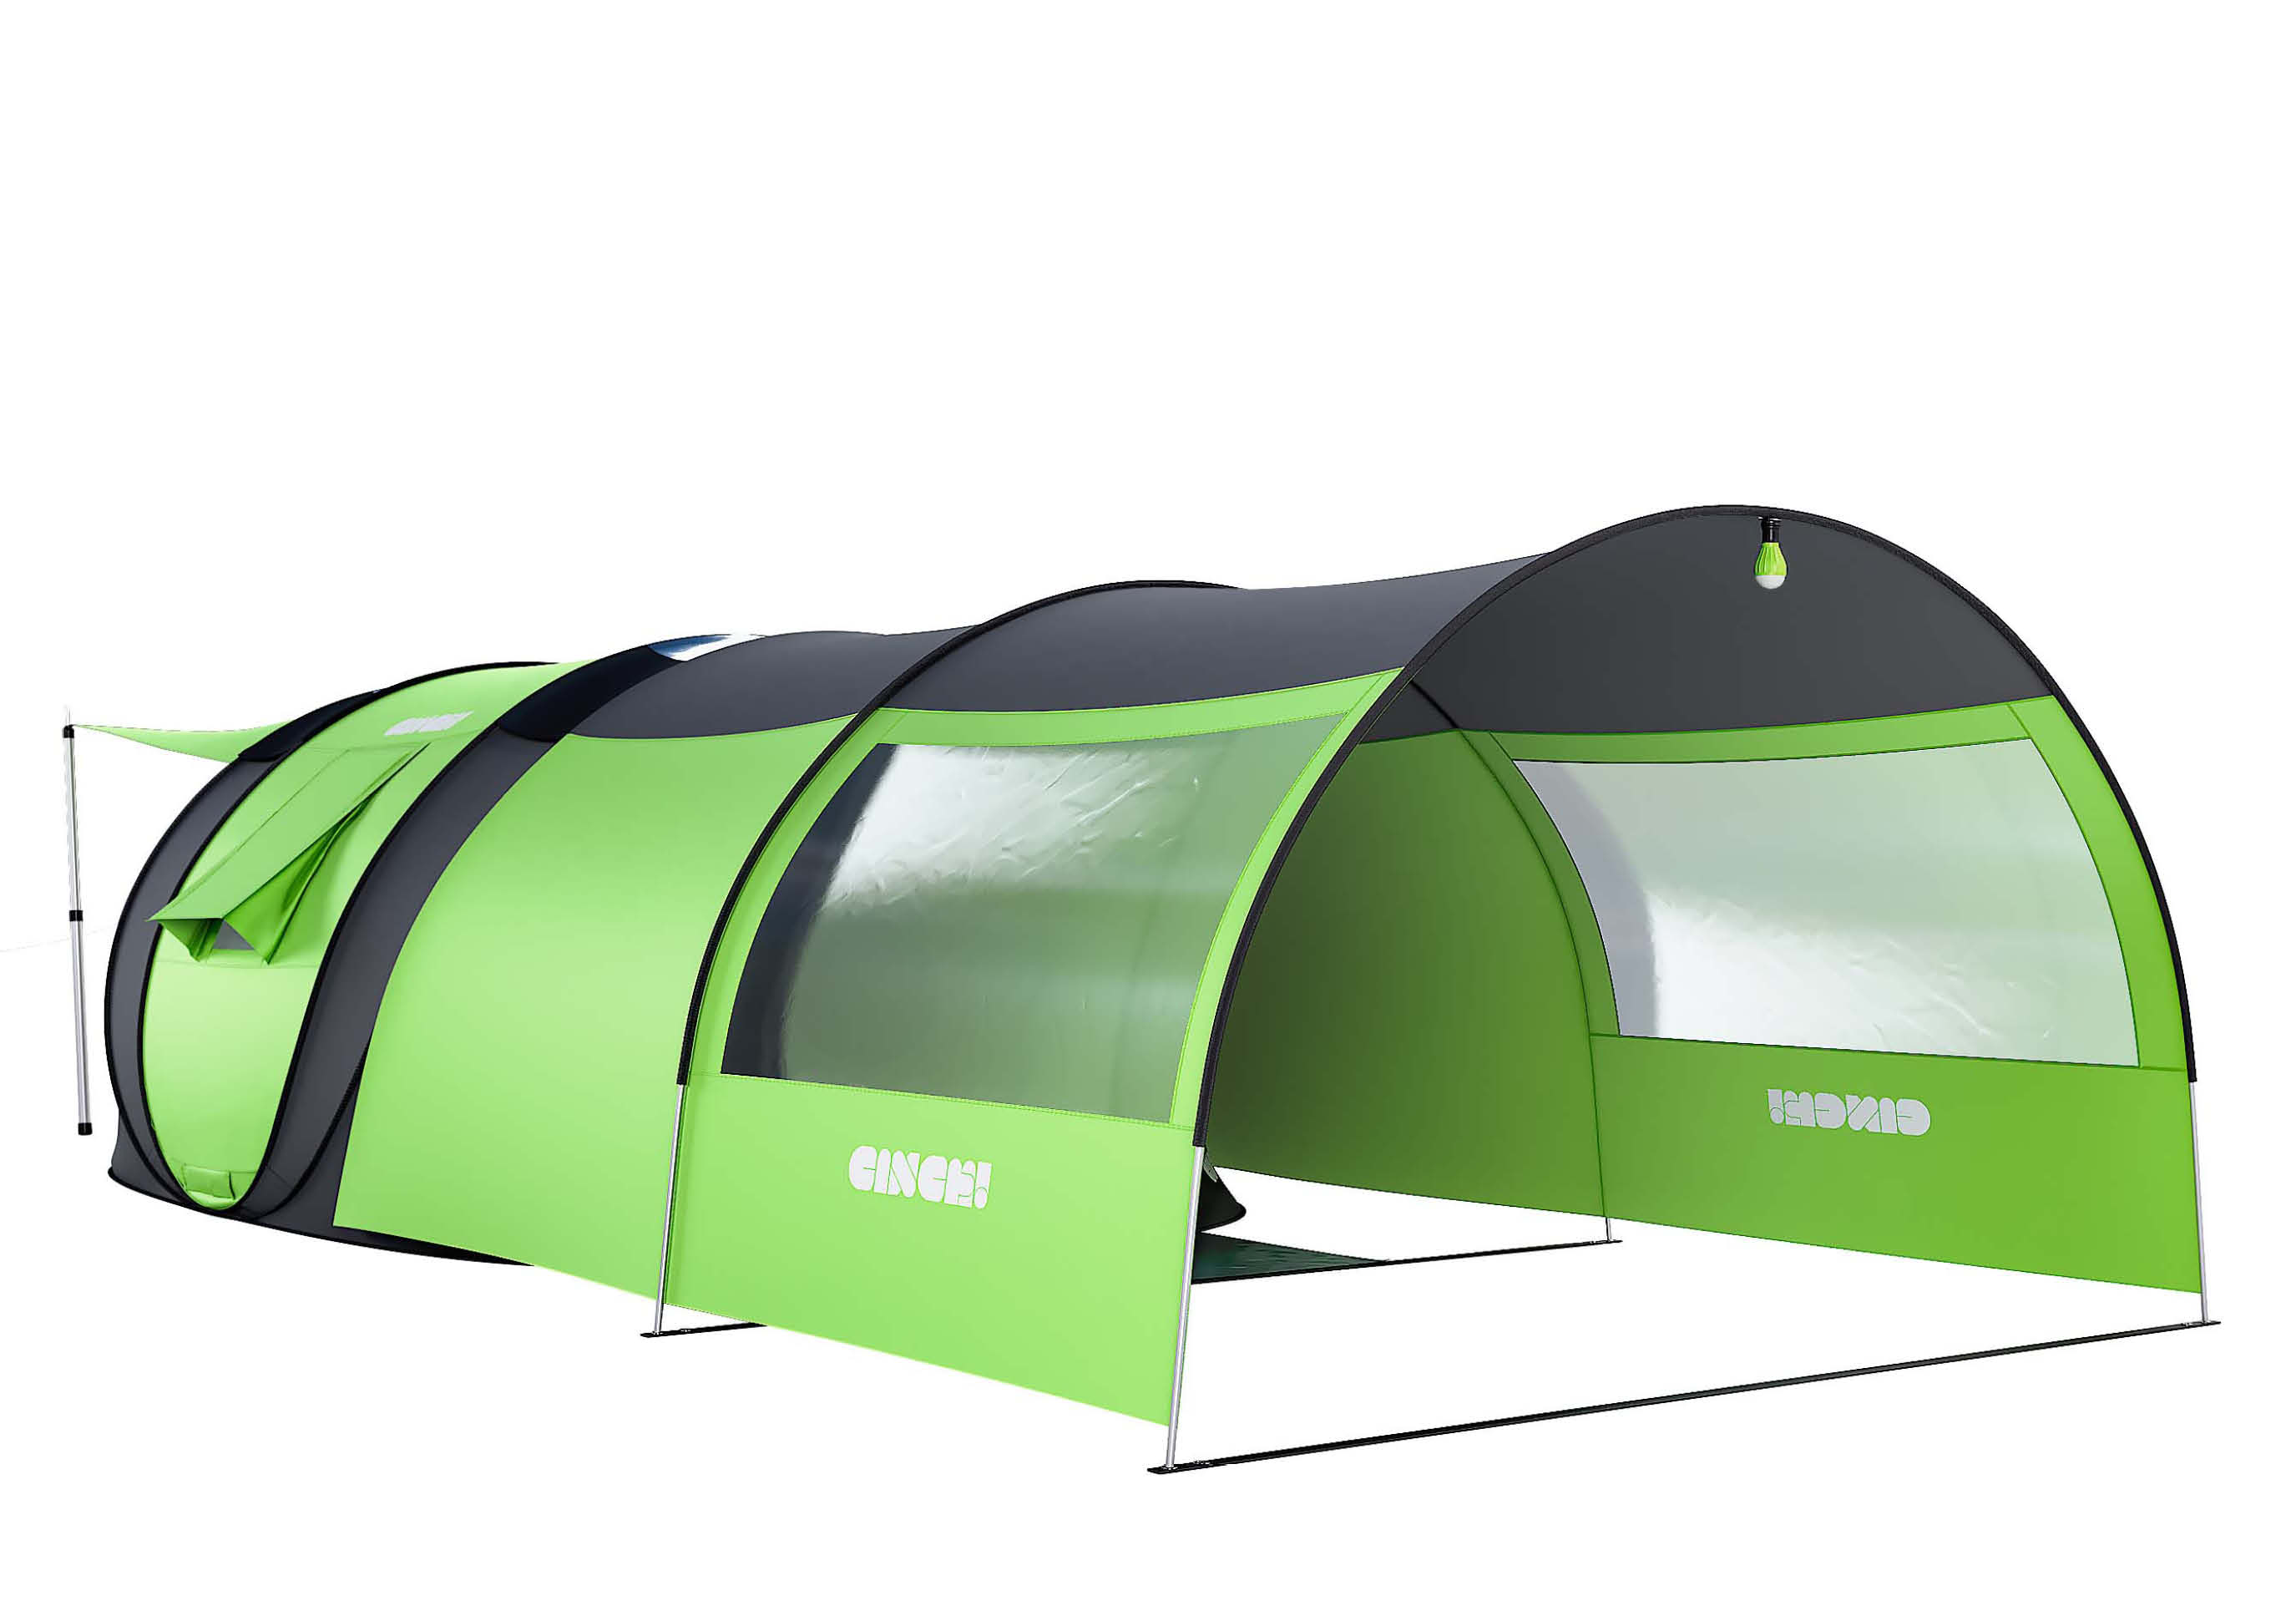 Cinch! World's Smartest Tent! | Indiegogo